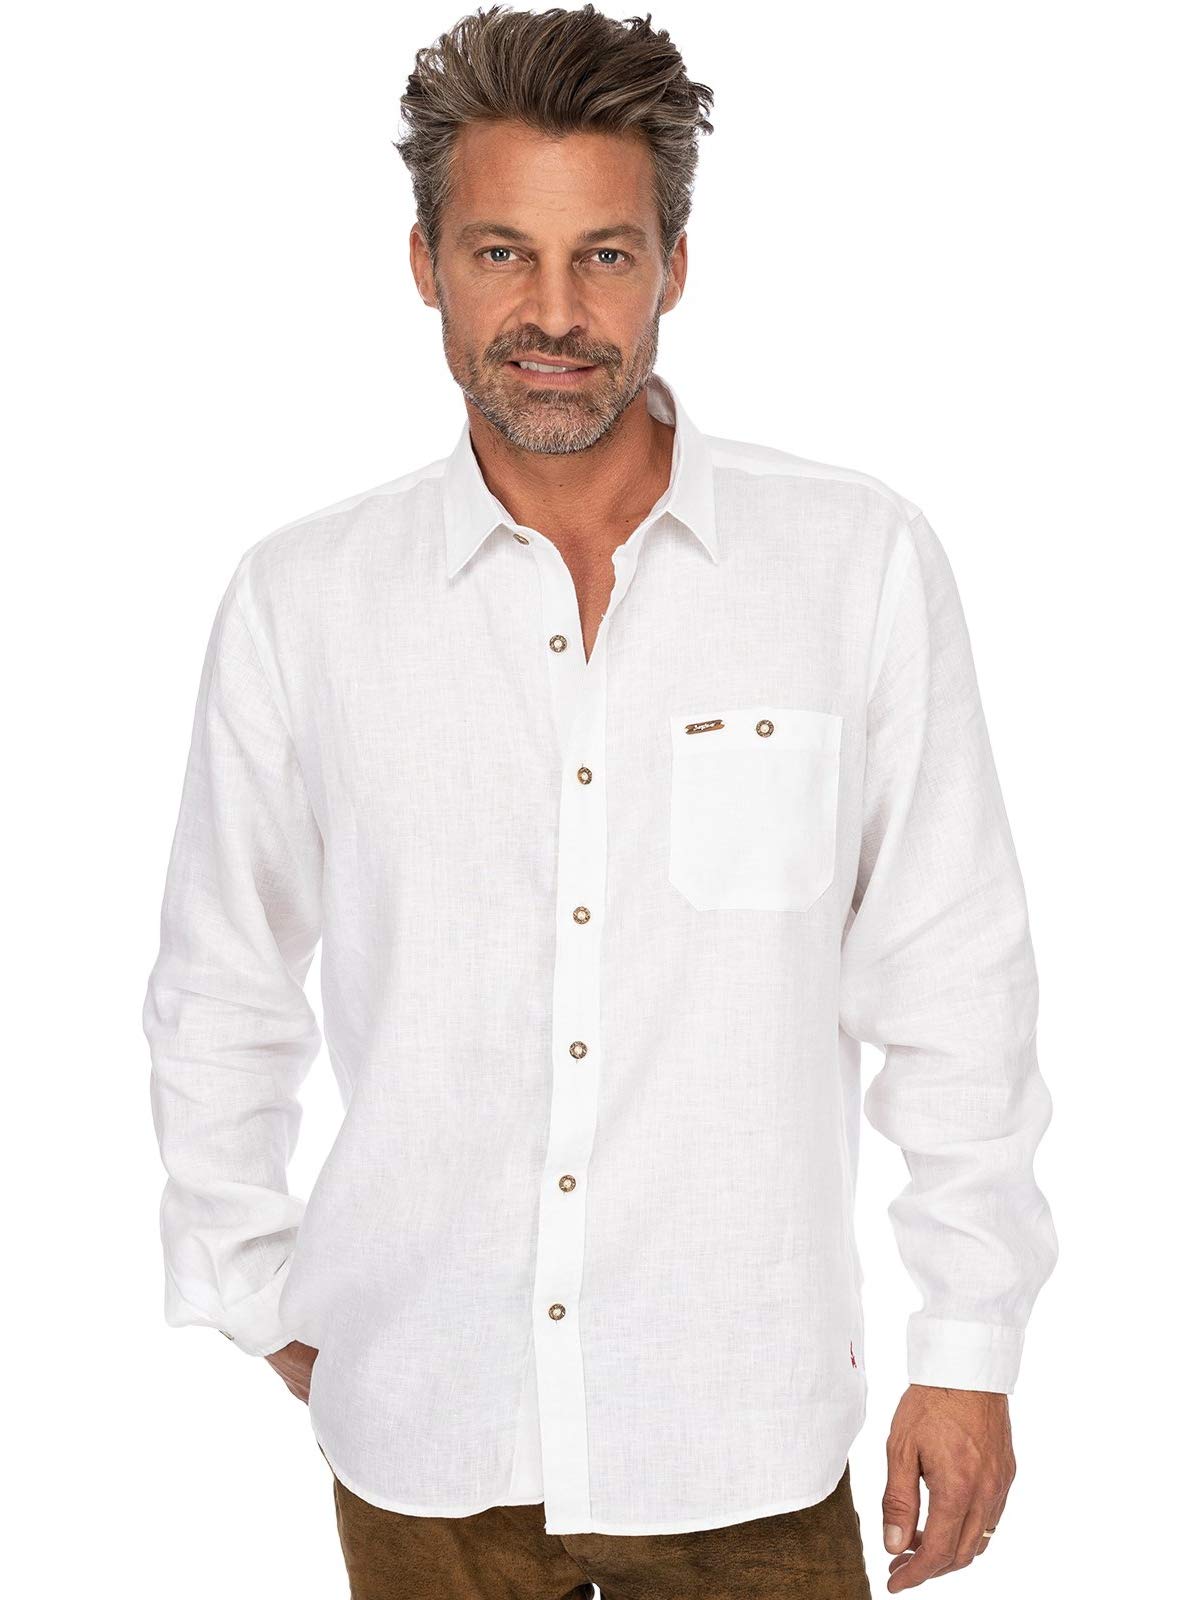 Stockerpoint Herren Hemd Vincent2 Trachtenhemd, Weiß (Weiss Weiss), XX-Large (Herstellergröße: 2XL)